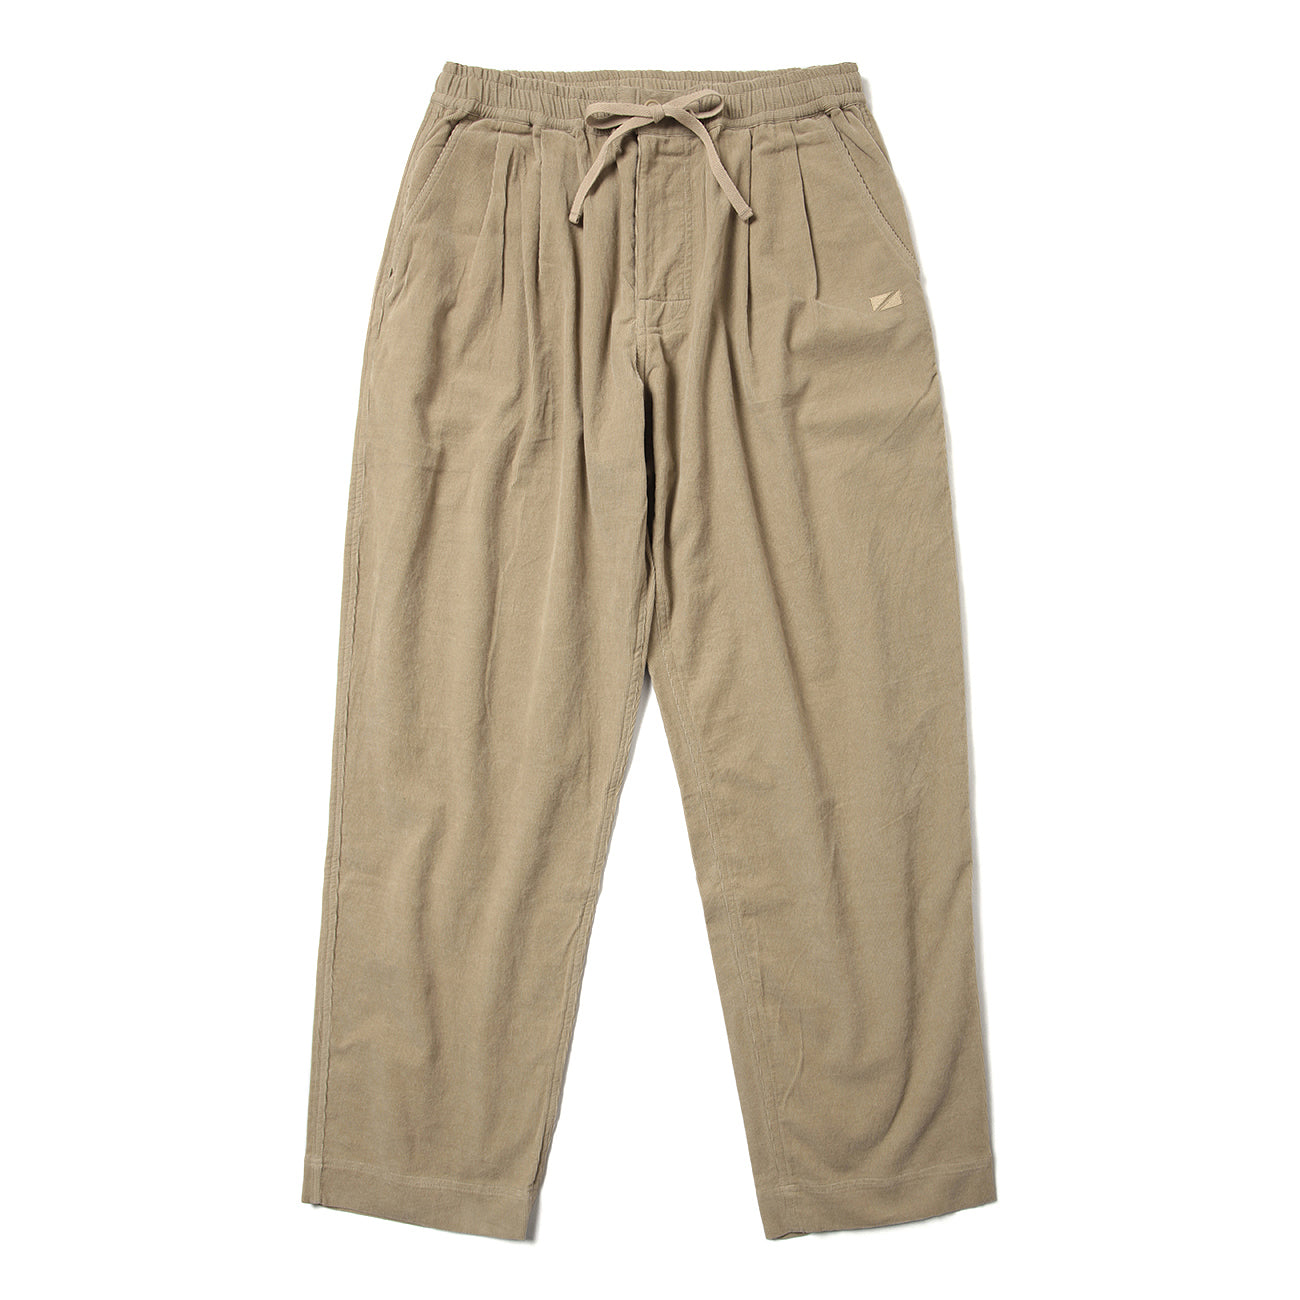 2P WIDE PANTS (HERINGBONE) - BEIGE | Short pants every day